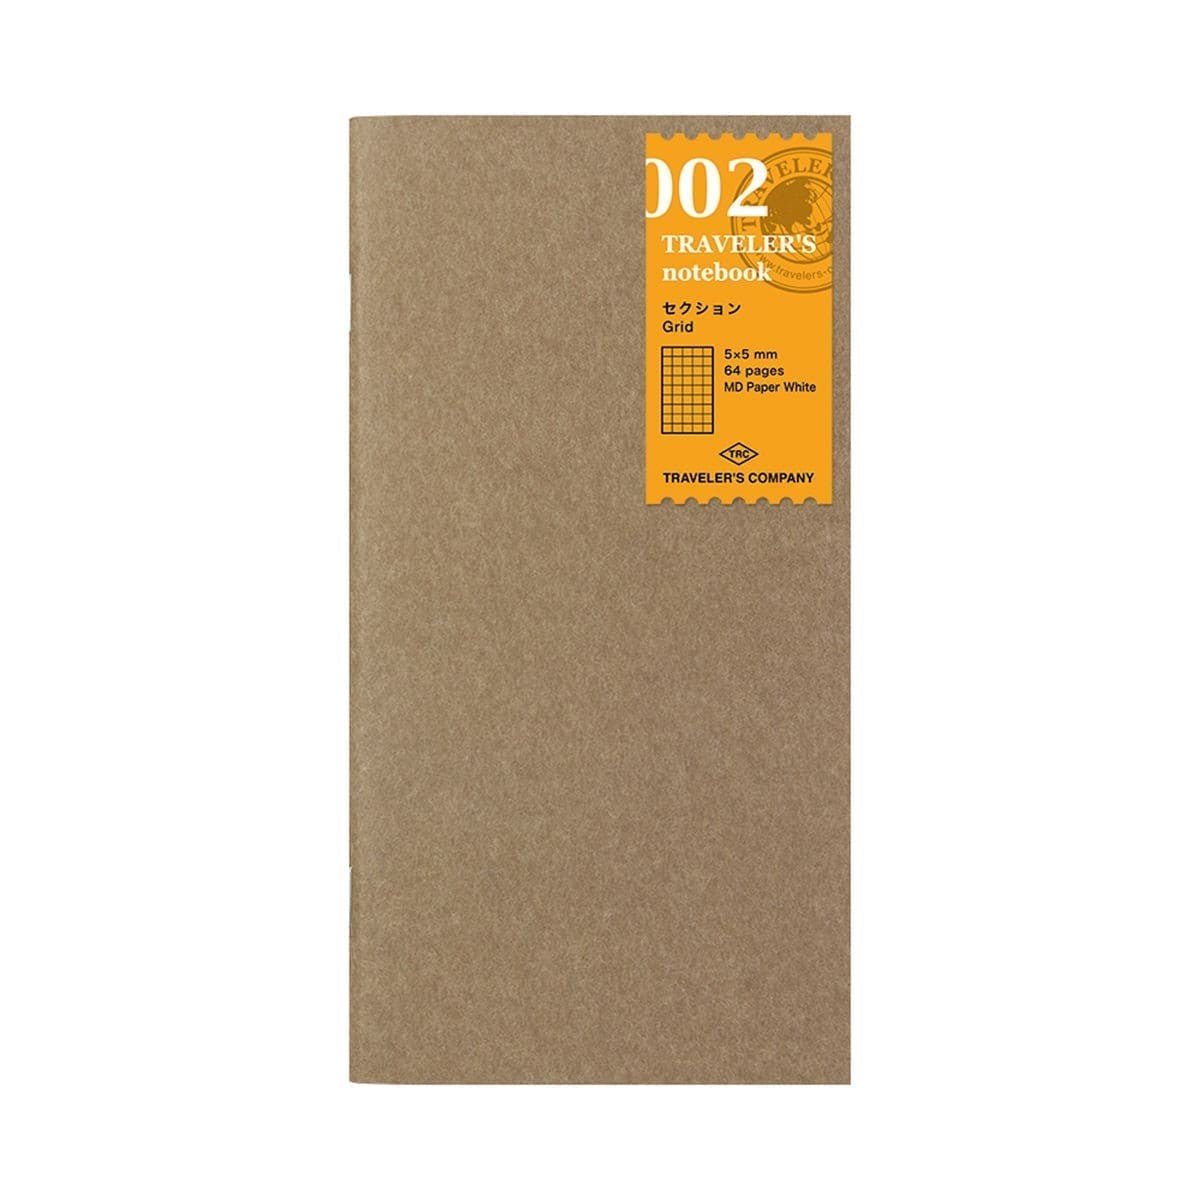 TN Regular Refill 002. Grid notebook - Traveler's Company - Tidformera